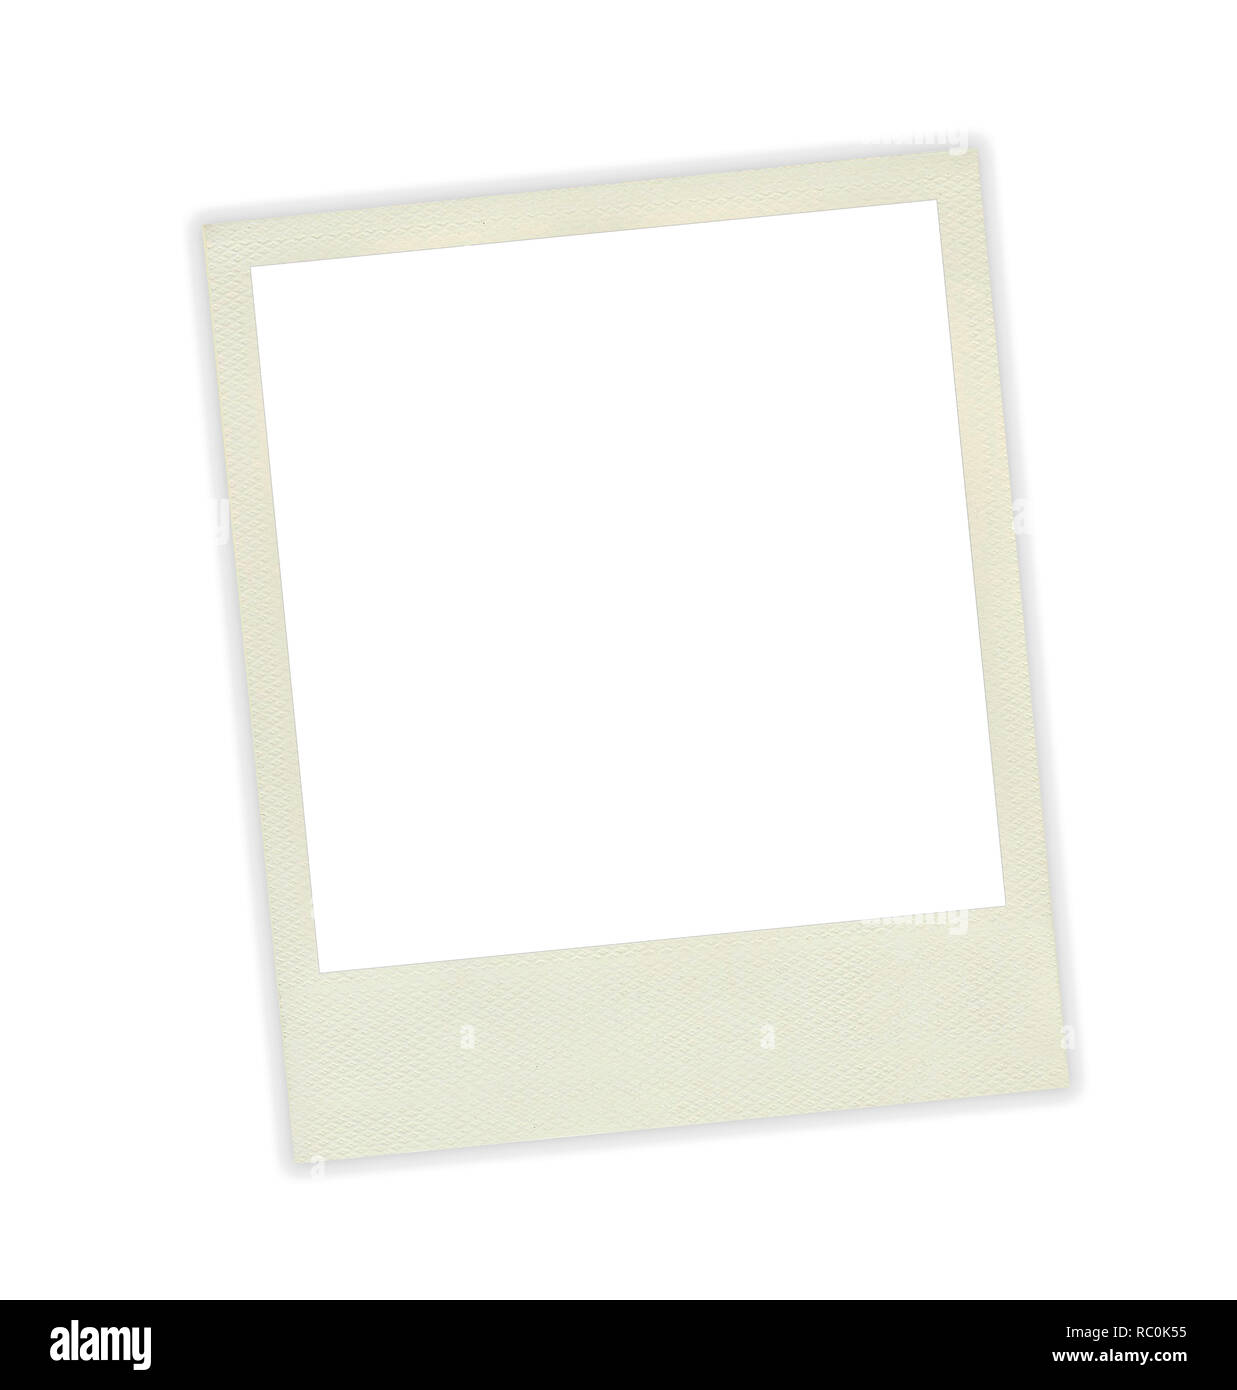 Marco de fotos polaroid plantilla sobre fondo blanco Fotografía de stock -  Alamy